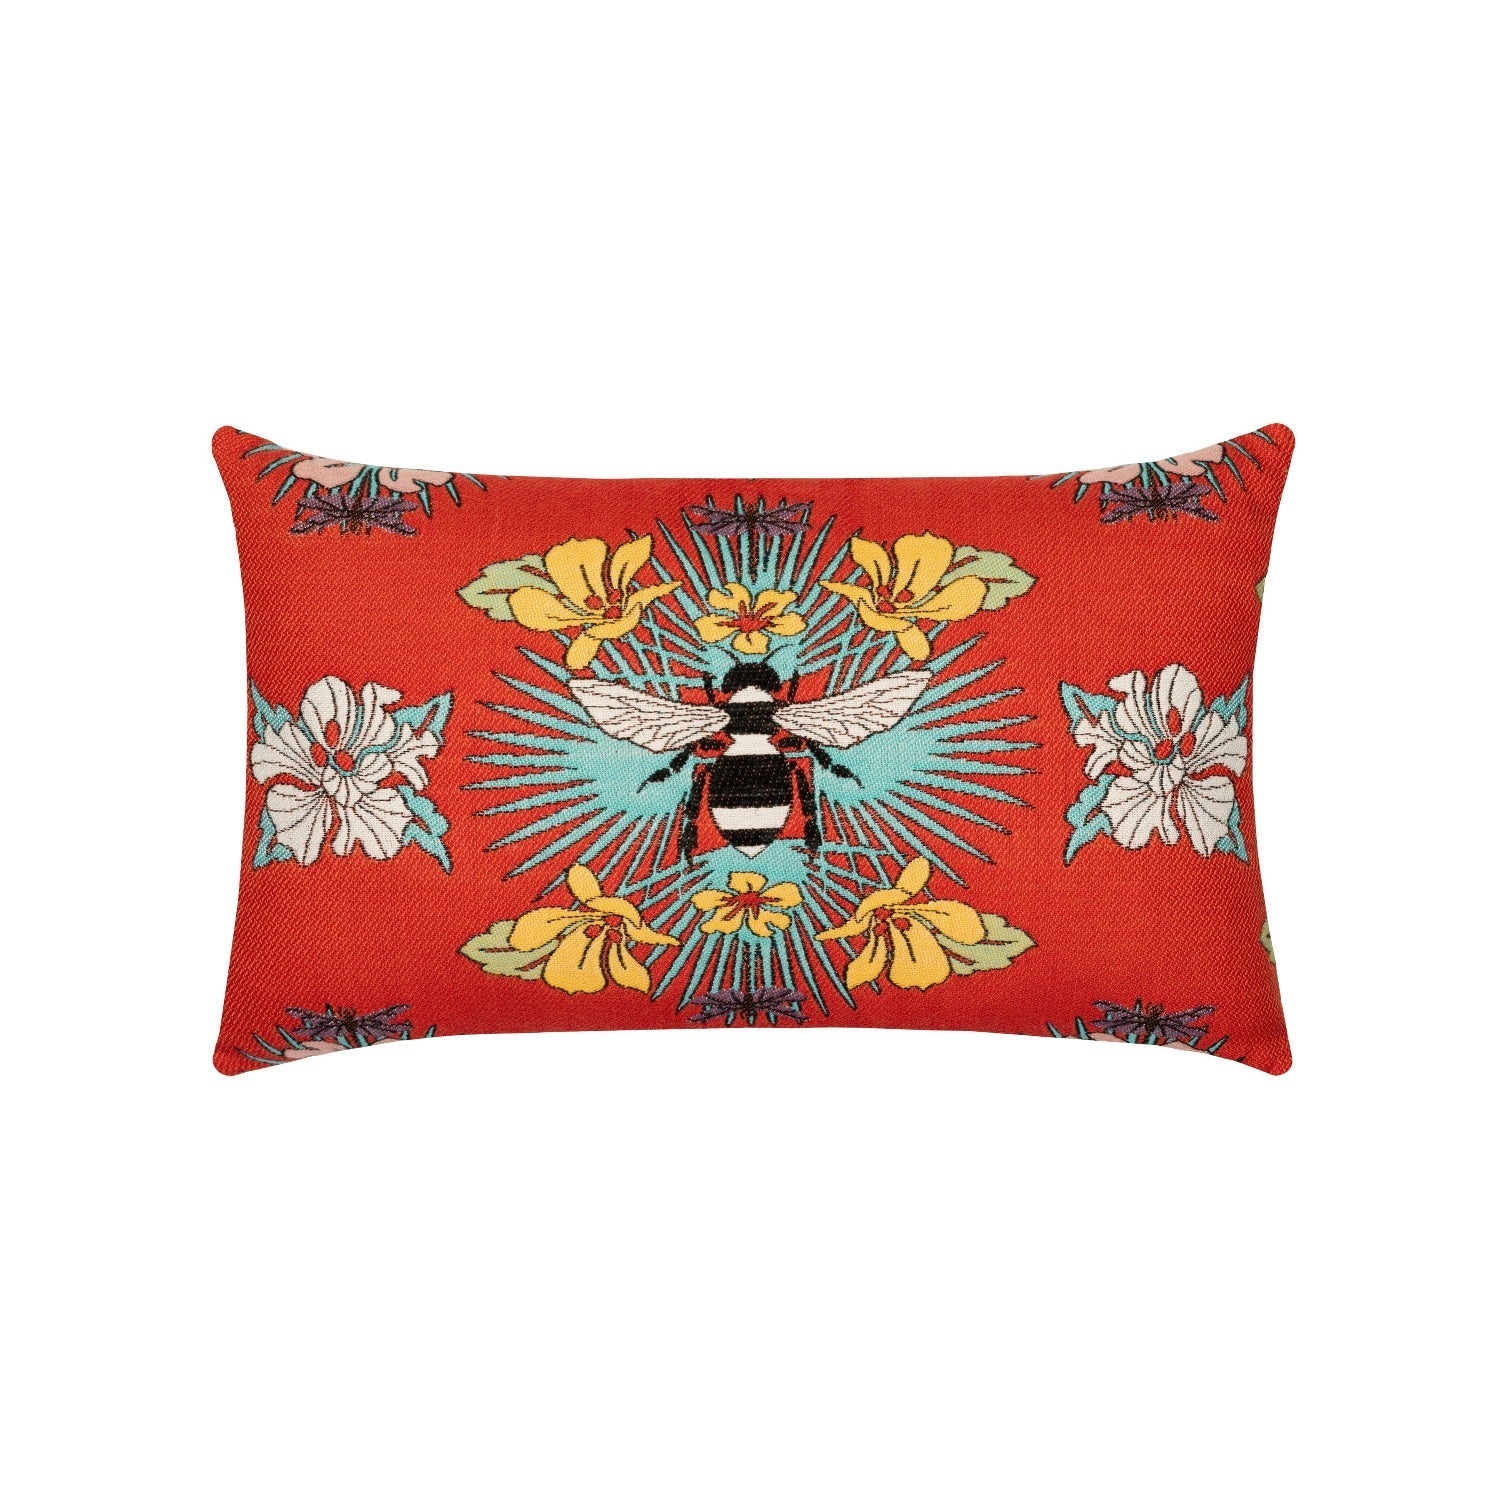 Elaine Smith Tropical Bee Red Lumbar Pillow Throw Pillows 12030985